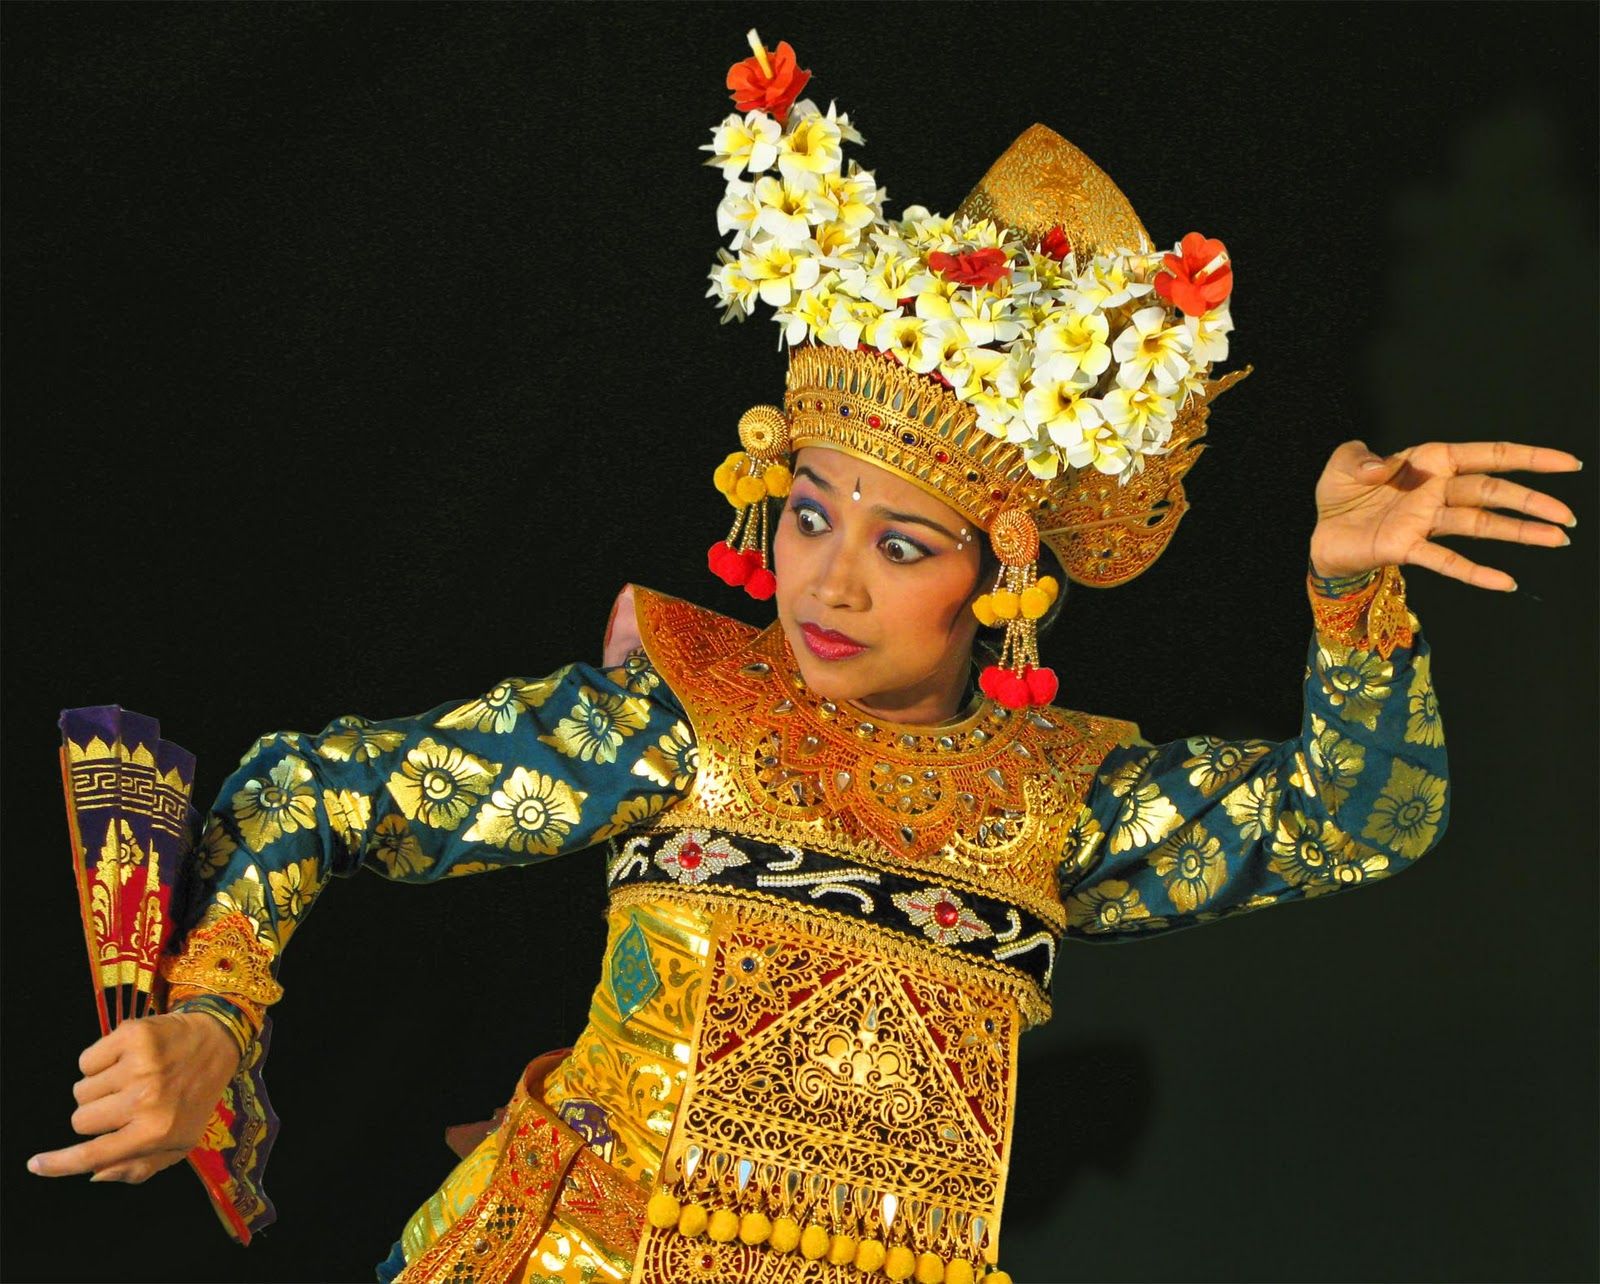 Mengenal Keunikan Tari Pendet, Tarian Pemujaan dari Bali